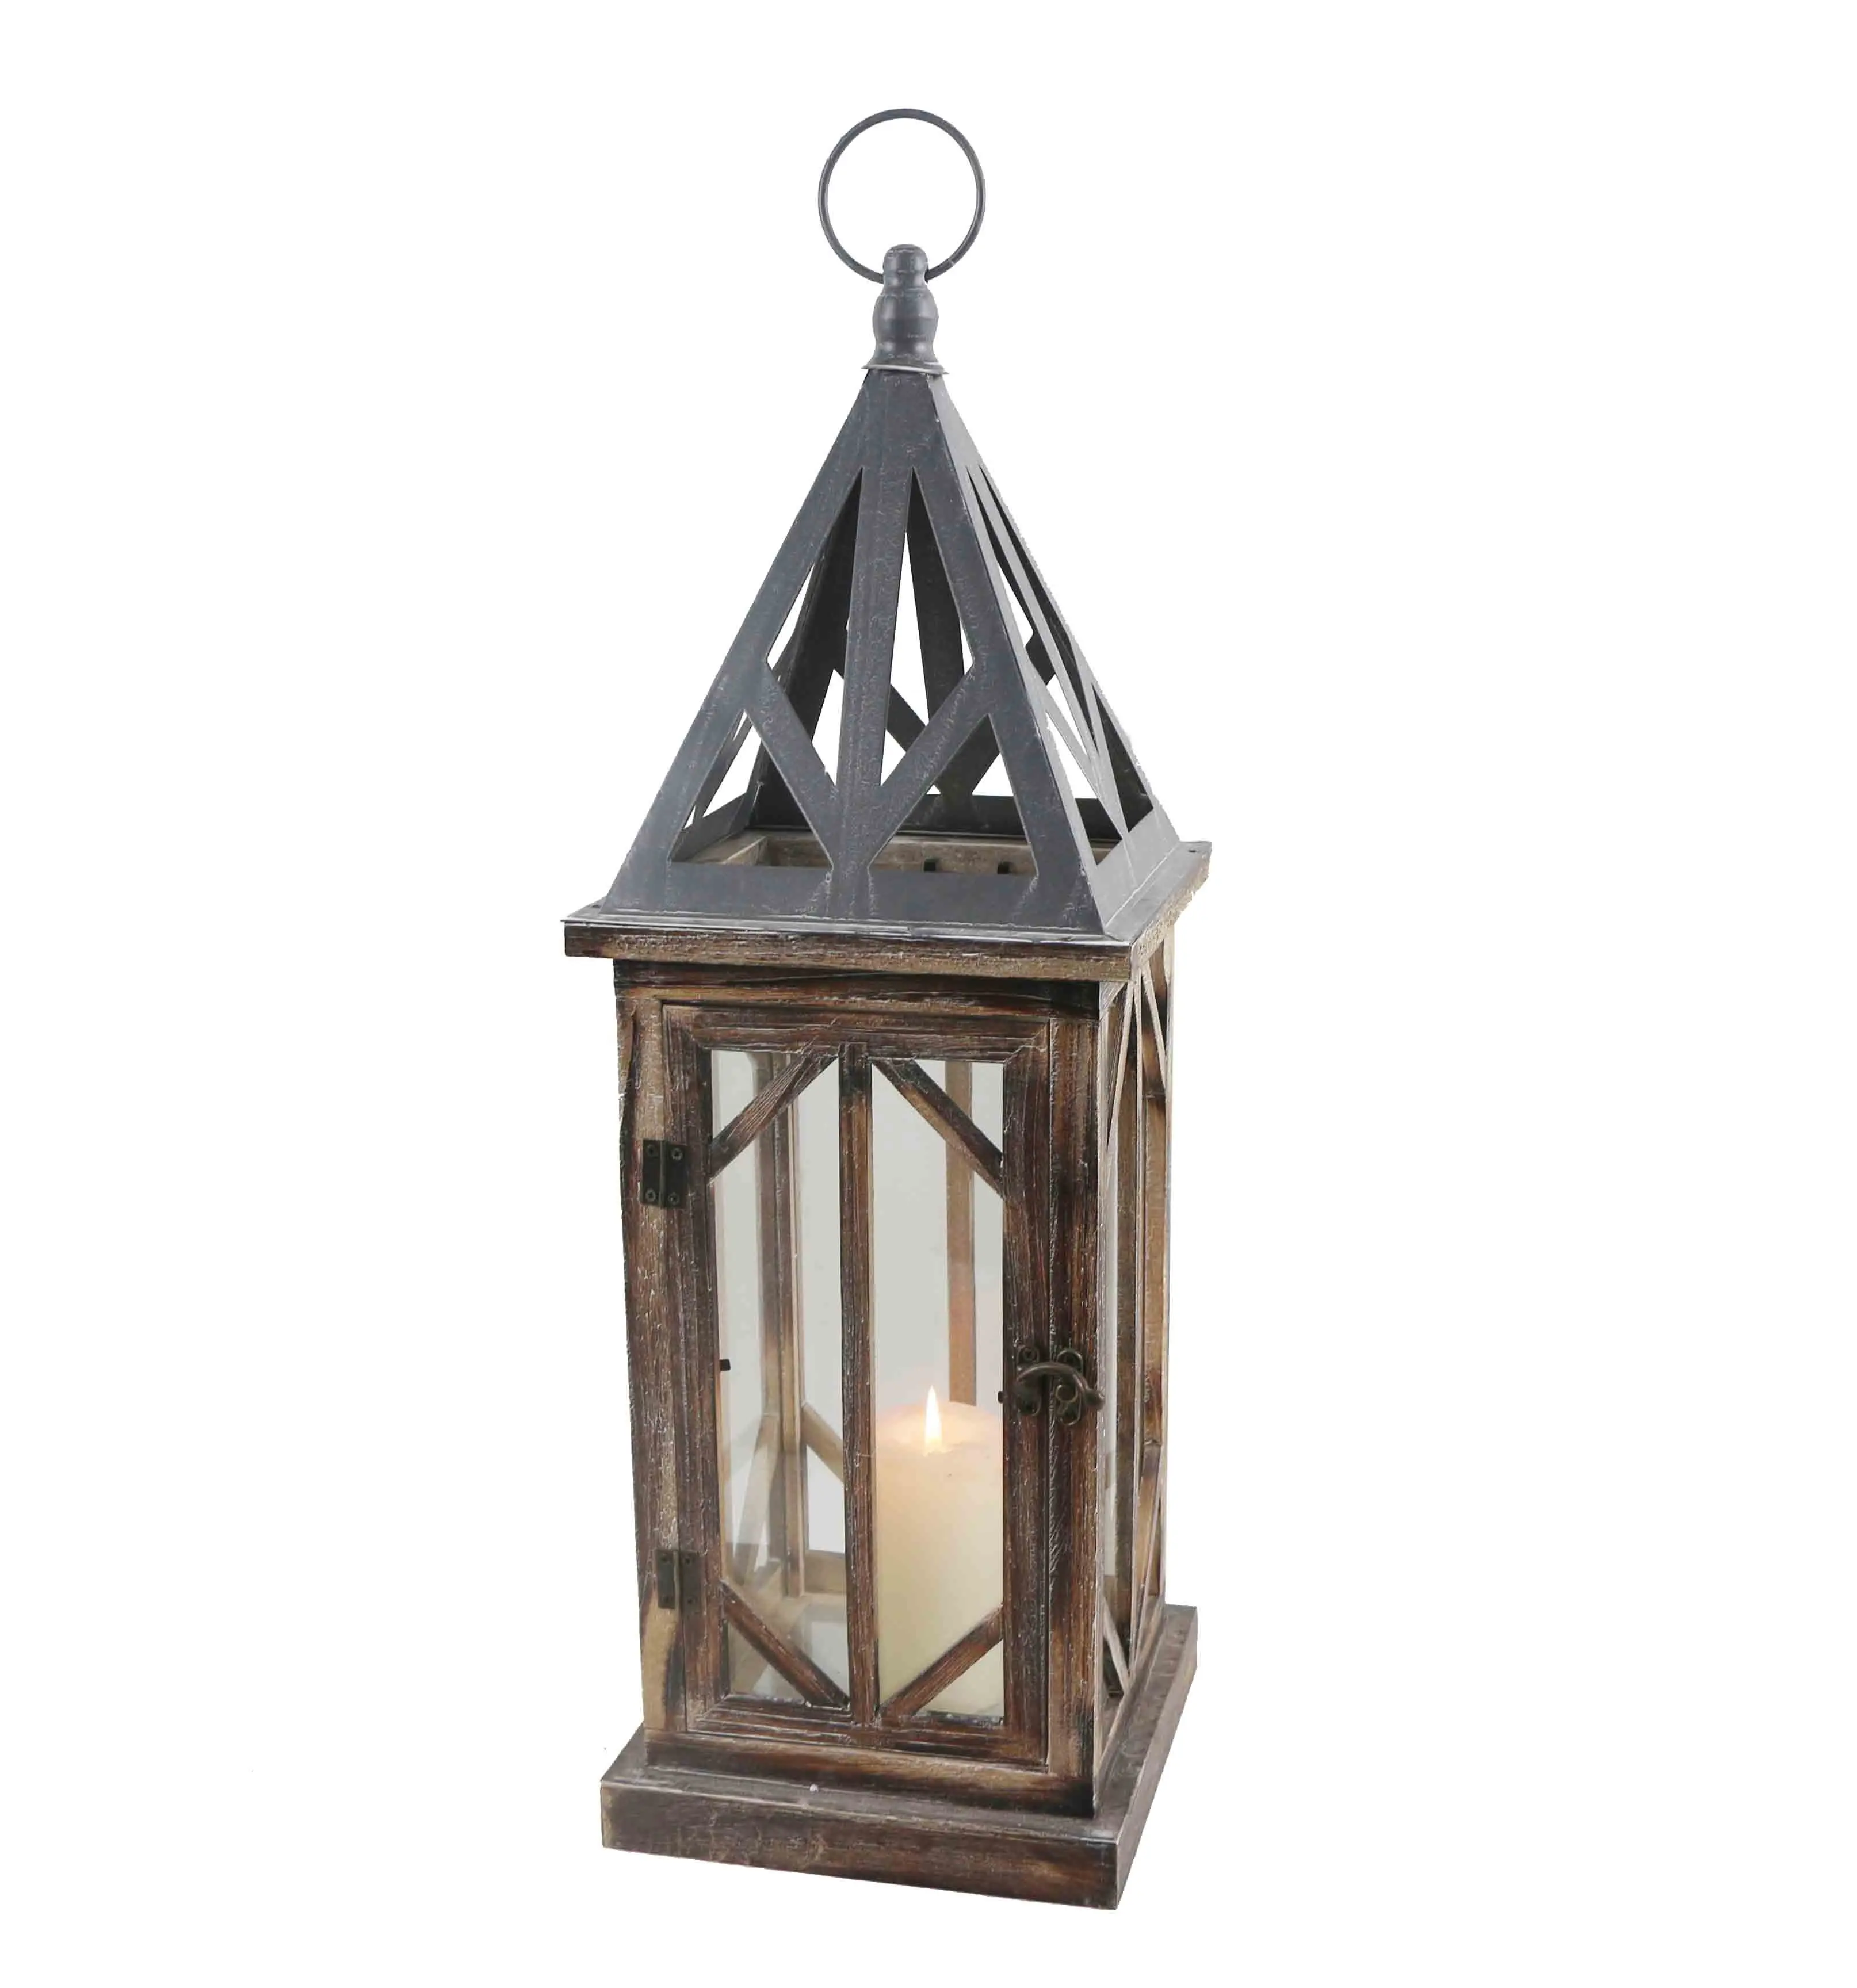 Высококачественный деревянный фонарь ручной работы с металлическим верхом для украшения дома или свадеб